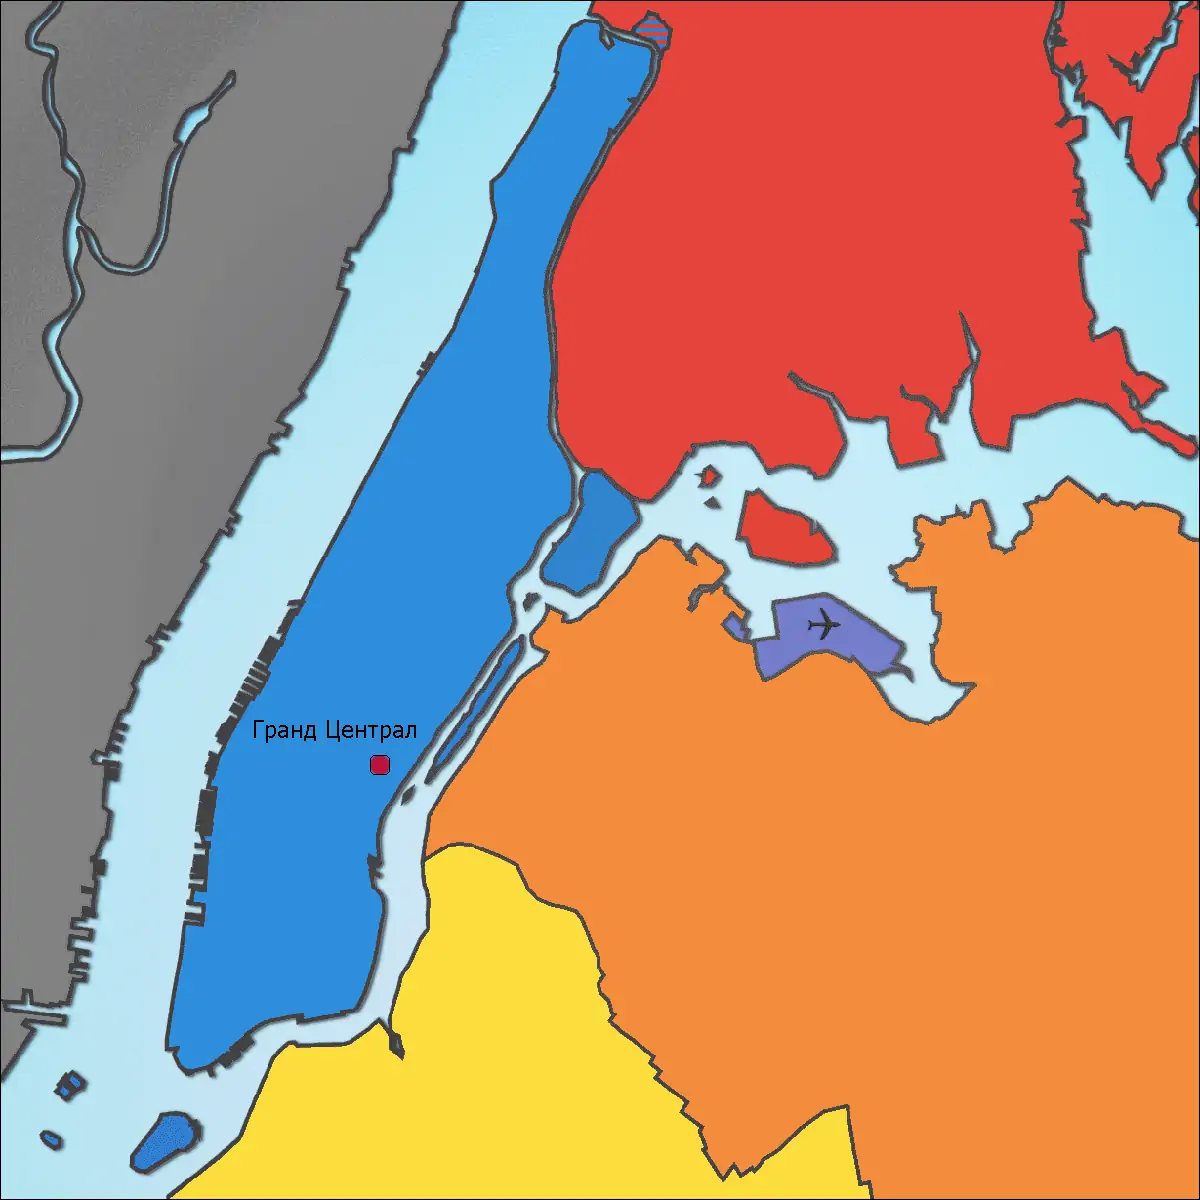 Гранд Централ на карте Нью-Йорка